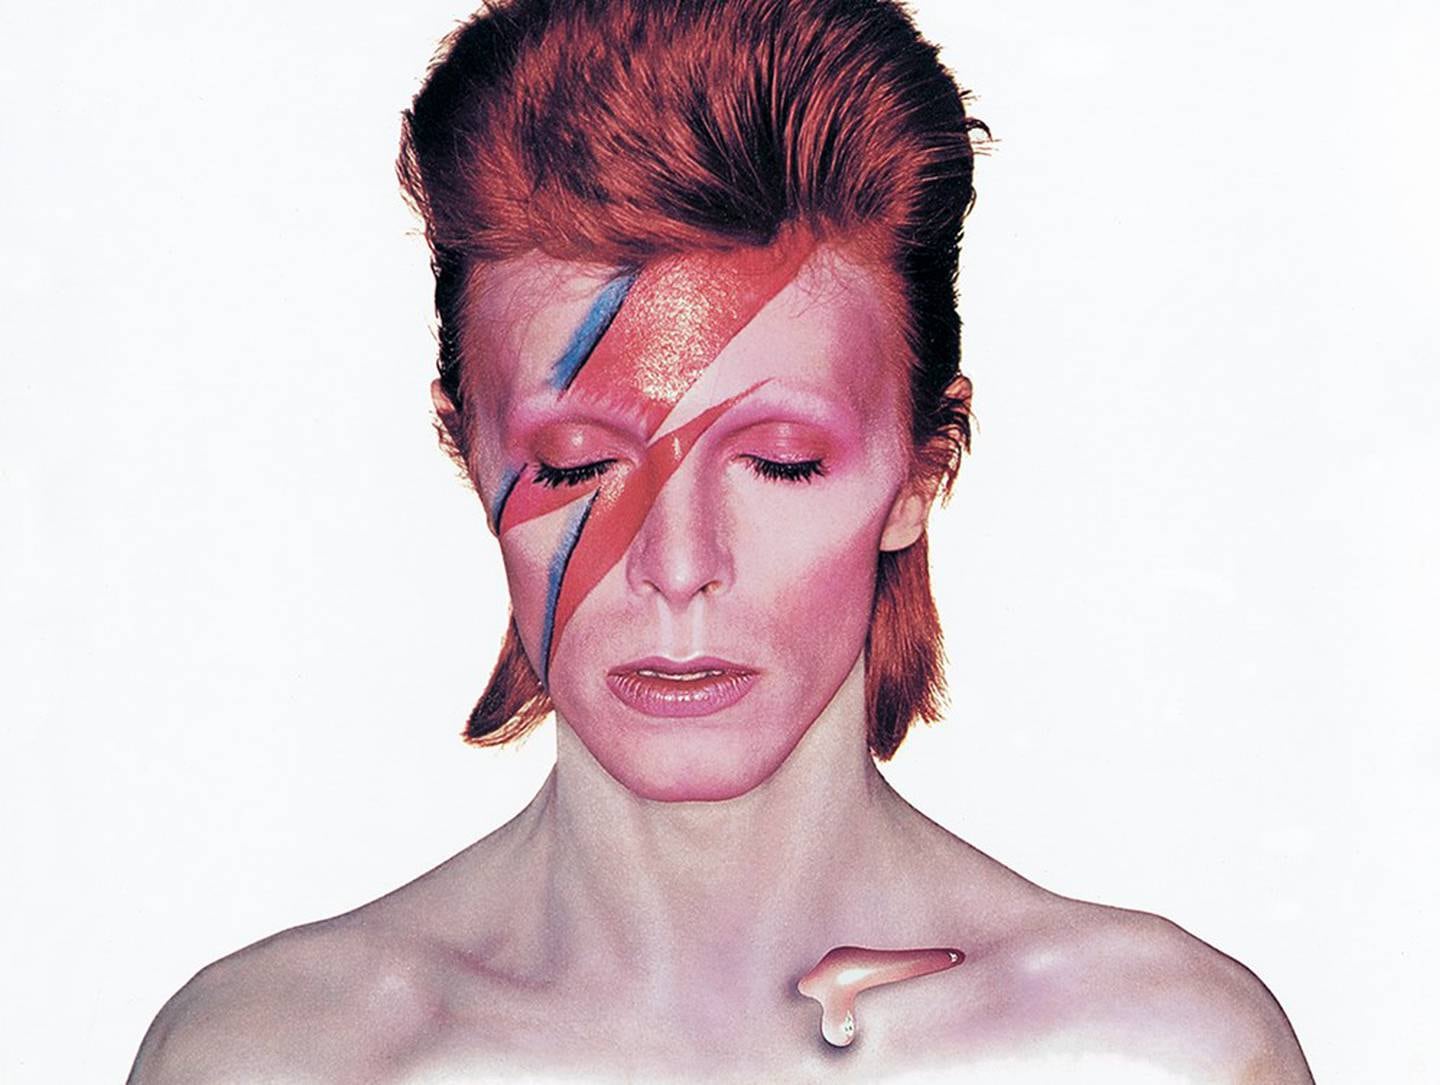 David Bowie ble Aladdin Sane i 1973, og ga også ut albumet "Pin Ups" senere det samme året.